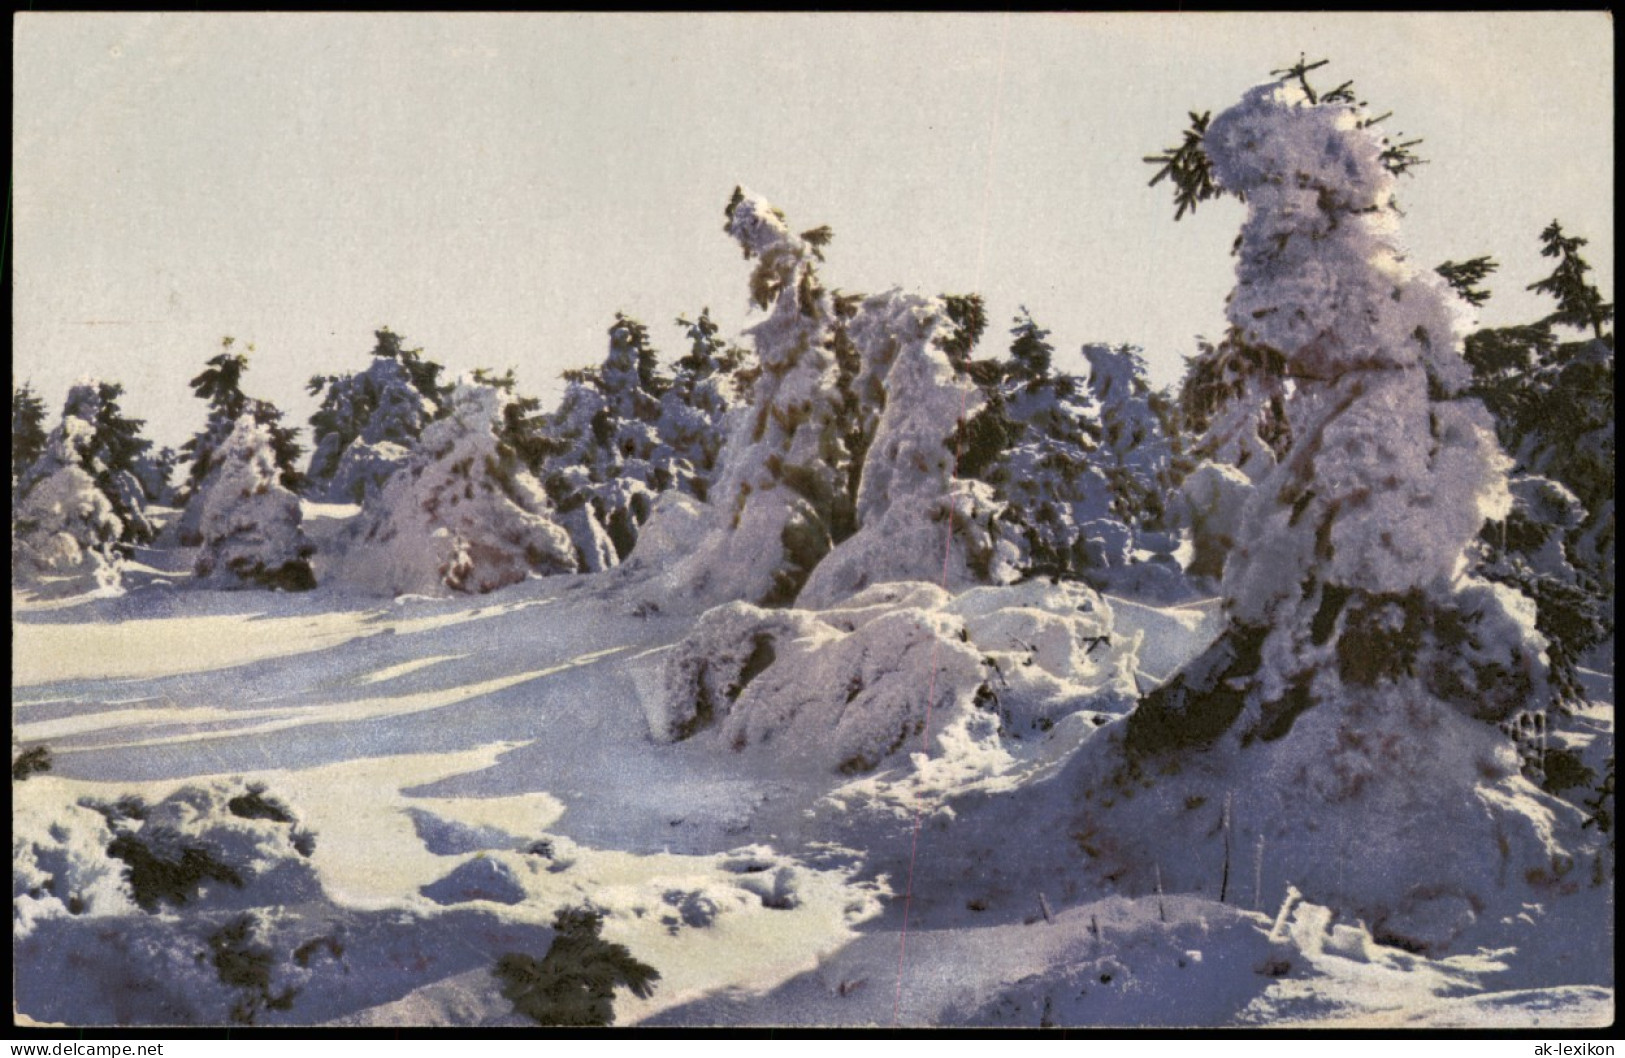 Ansichtskarte  Am Keilberg, Verschneite Tannen, Winter Stimmungsbild 1910 - Unclassified